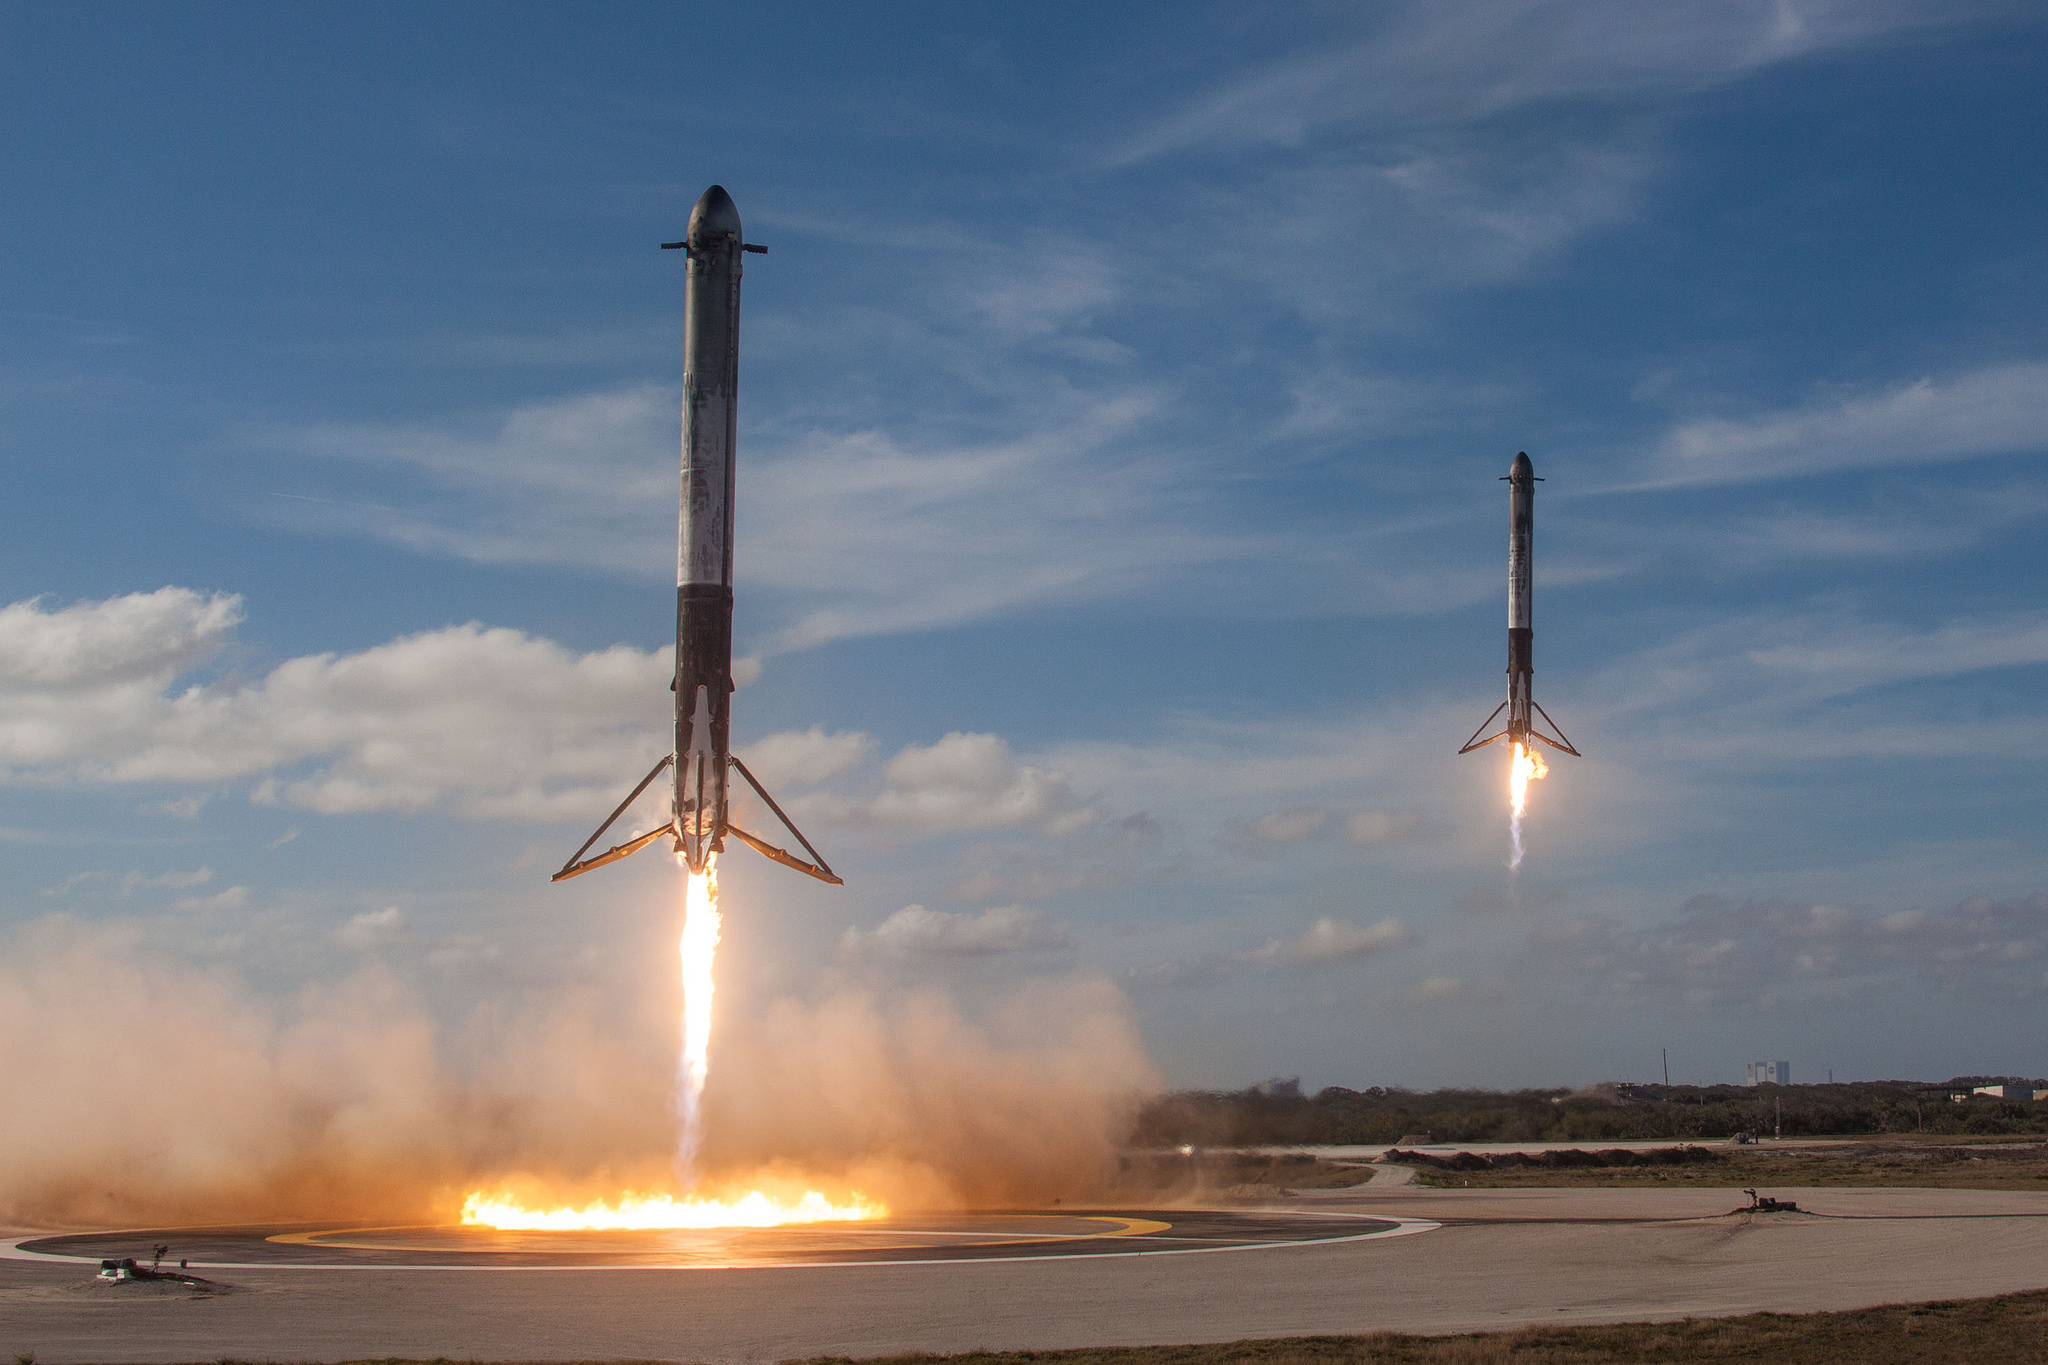 Elon Musk e Falcon Heavy, impresa riuscita!